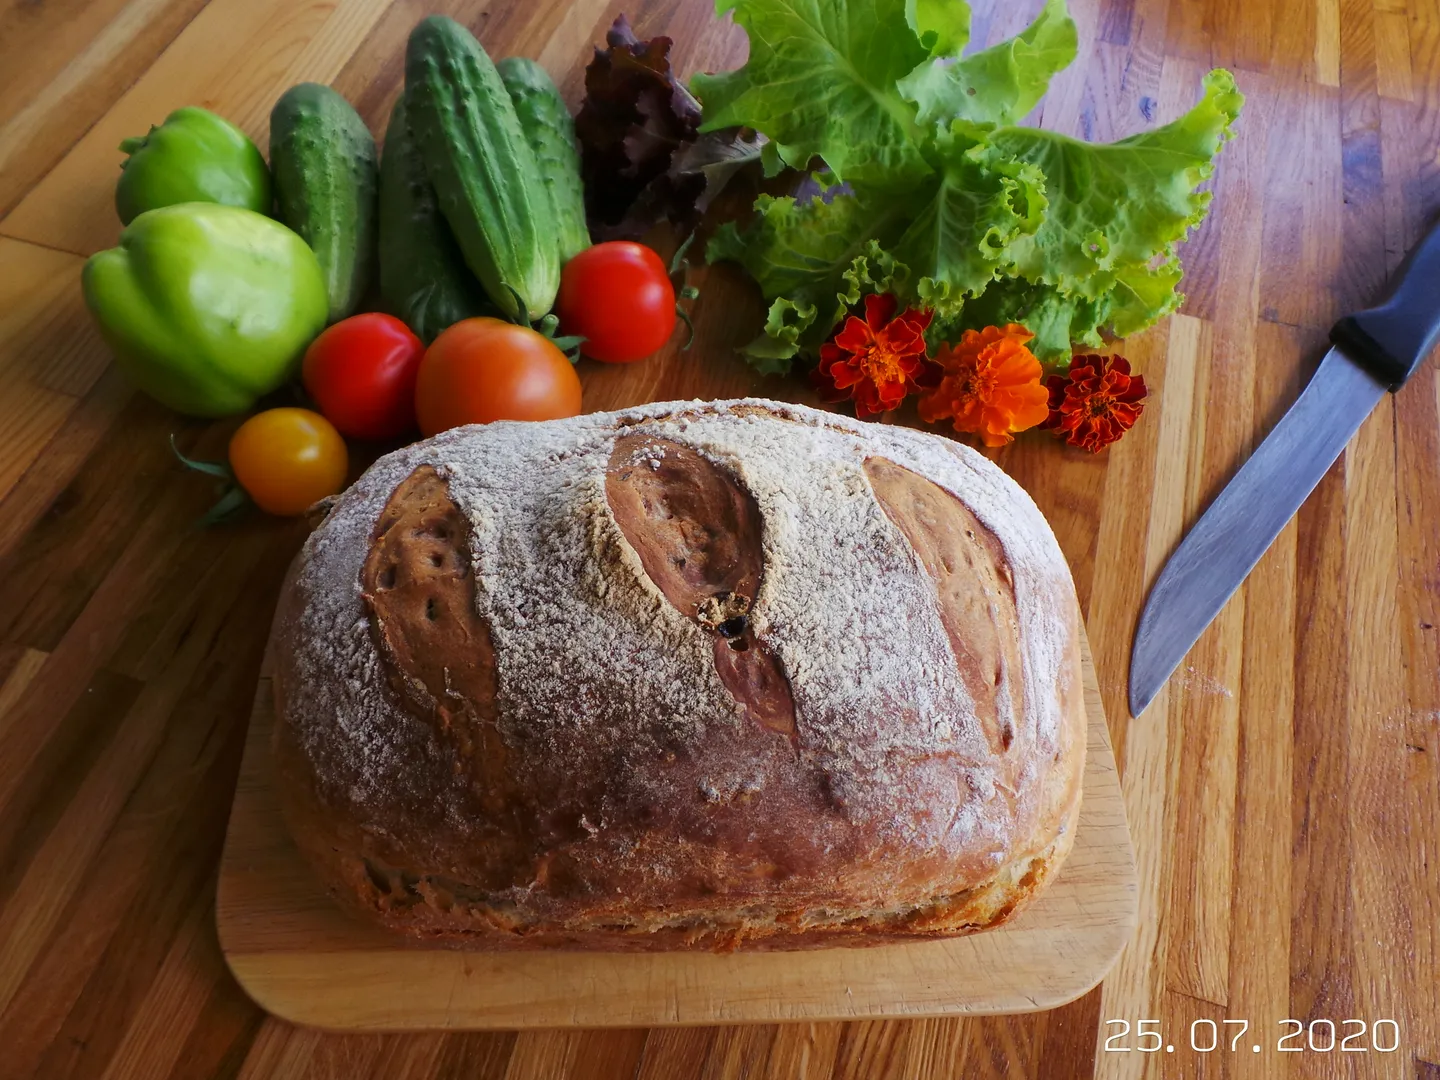 Сезон овощей. Овощи с огорода и ароматный хлеб с духовки. Что может быть лучше на свежем воздухе...